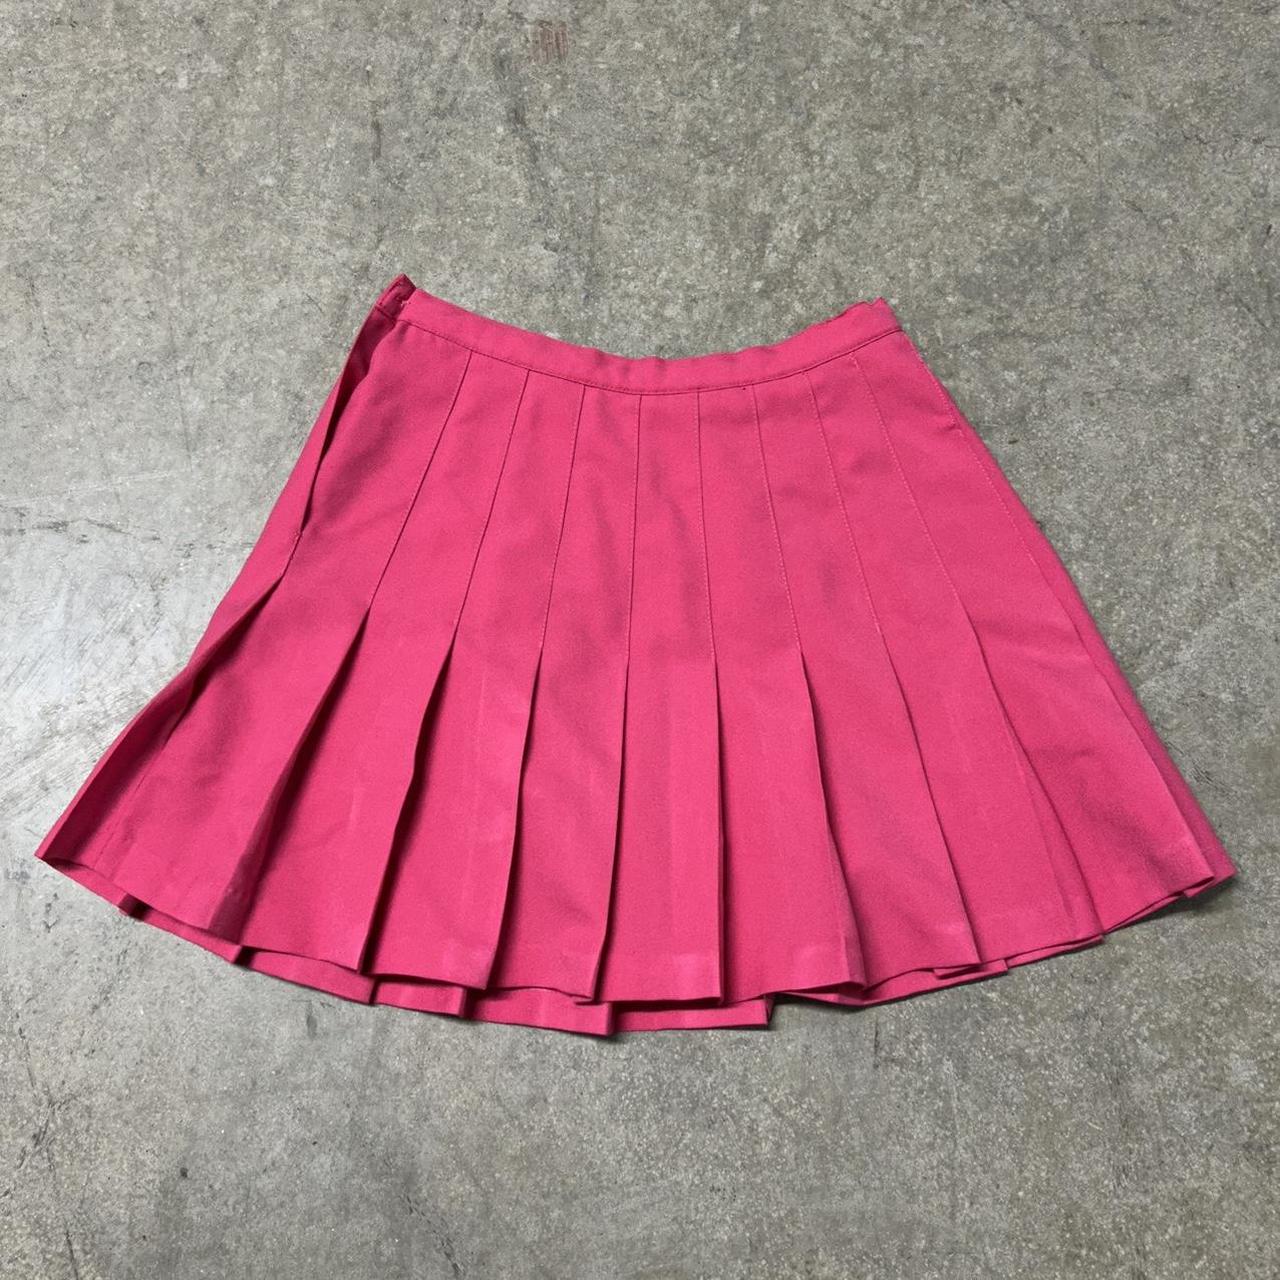 Adidas Women's Pink Skirt (4)